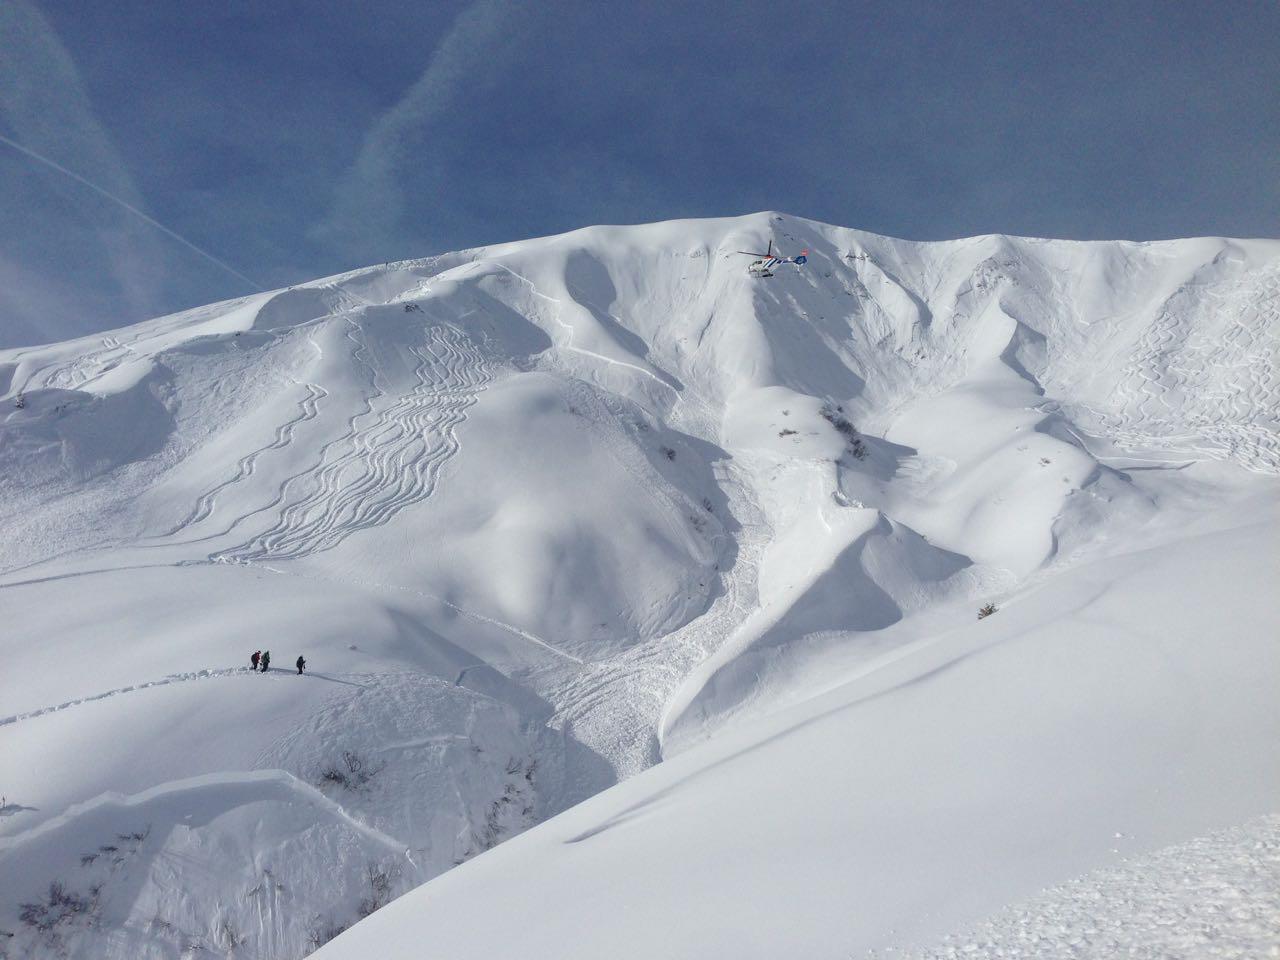 Glimpflich Schneebrettabgang oberhalb von Stuben. (Themenbild)